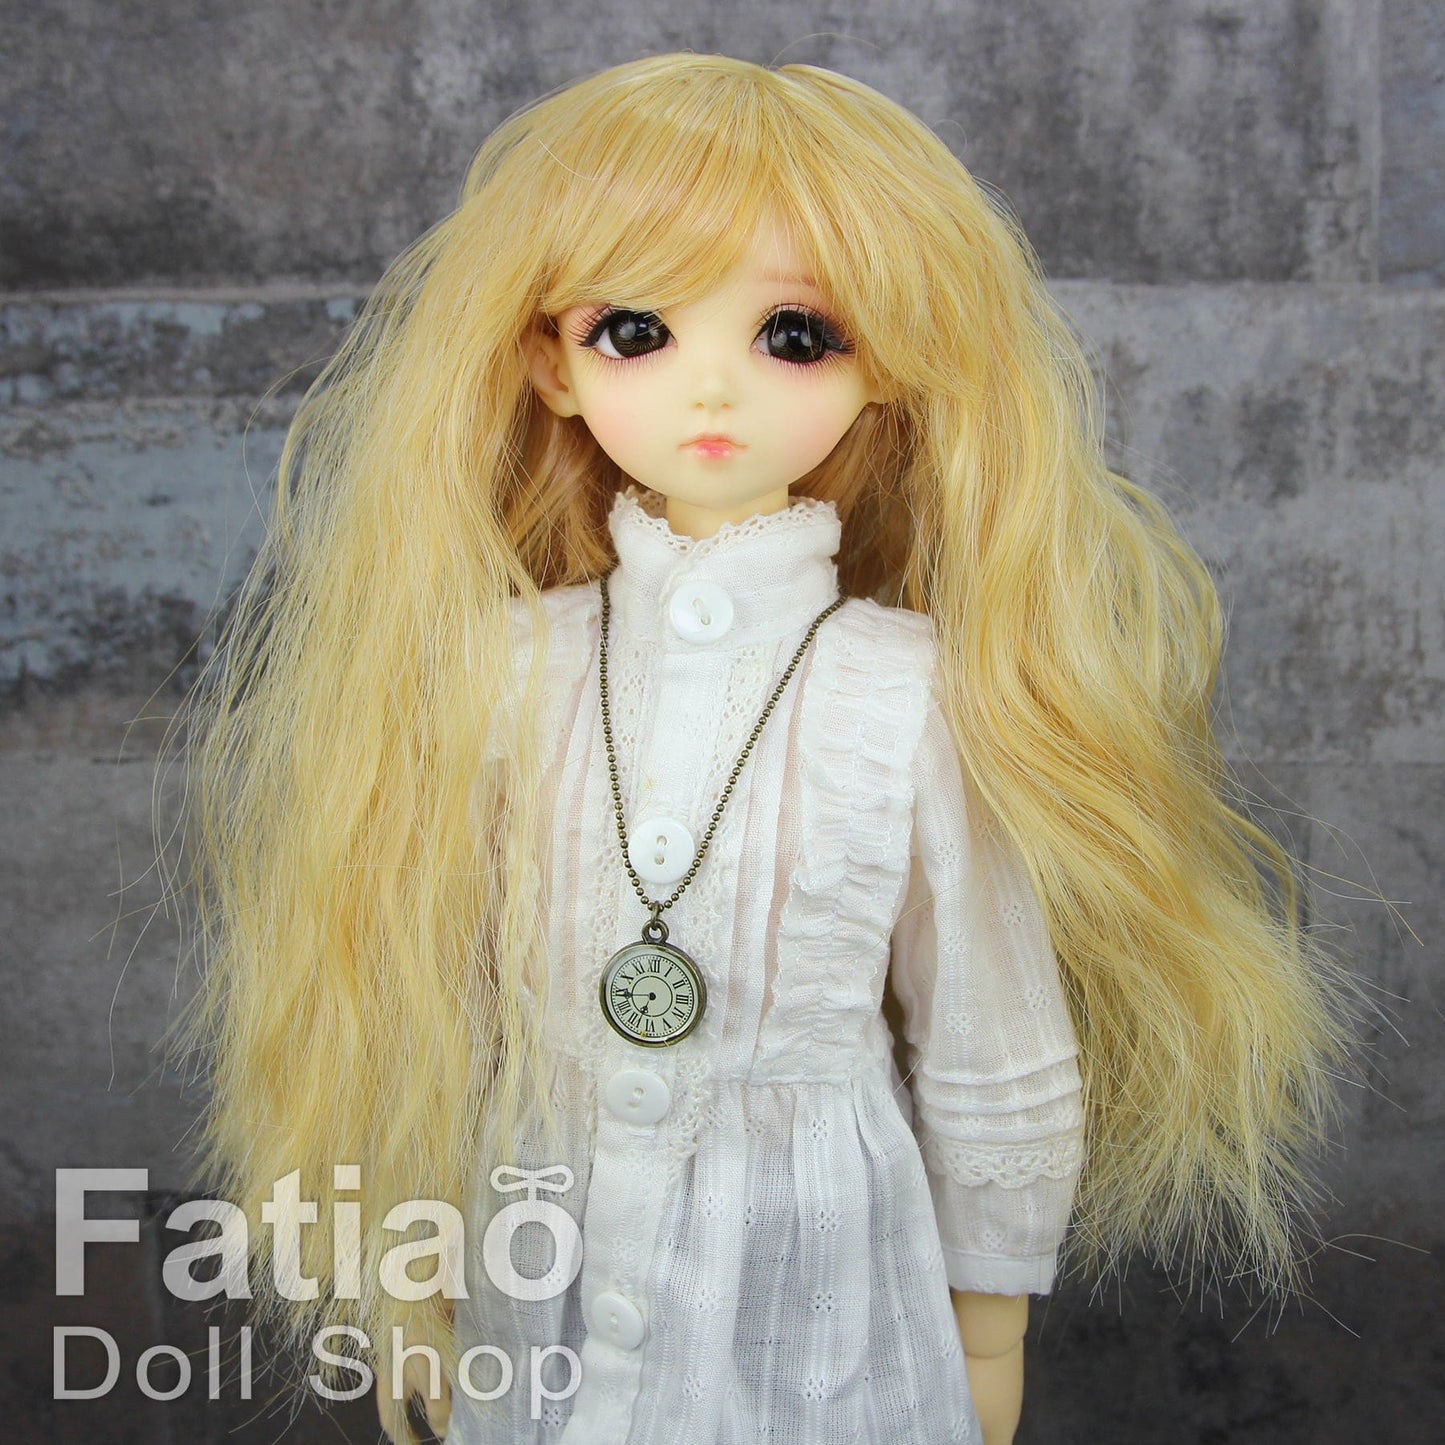 【Fatiao Doll Shop】FWF-223 娃用假髮 多色 / 7-8吋 BJD 4分 iMda3.0